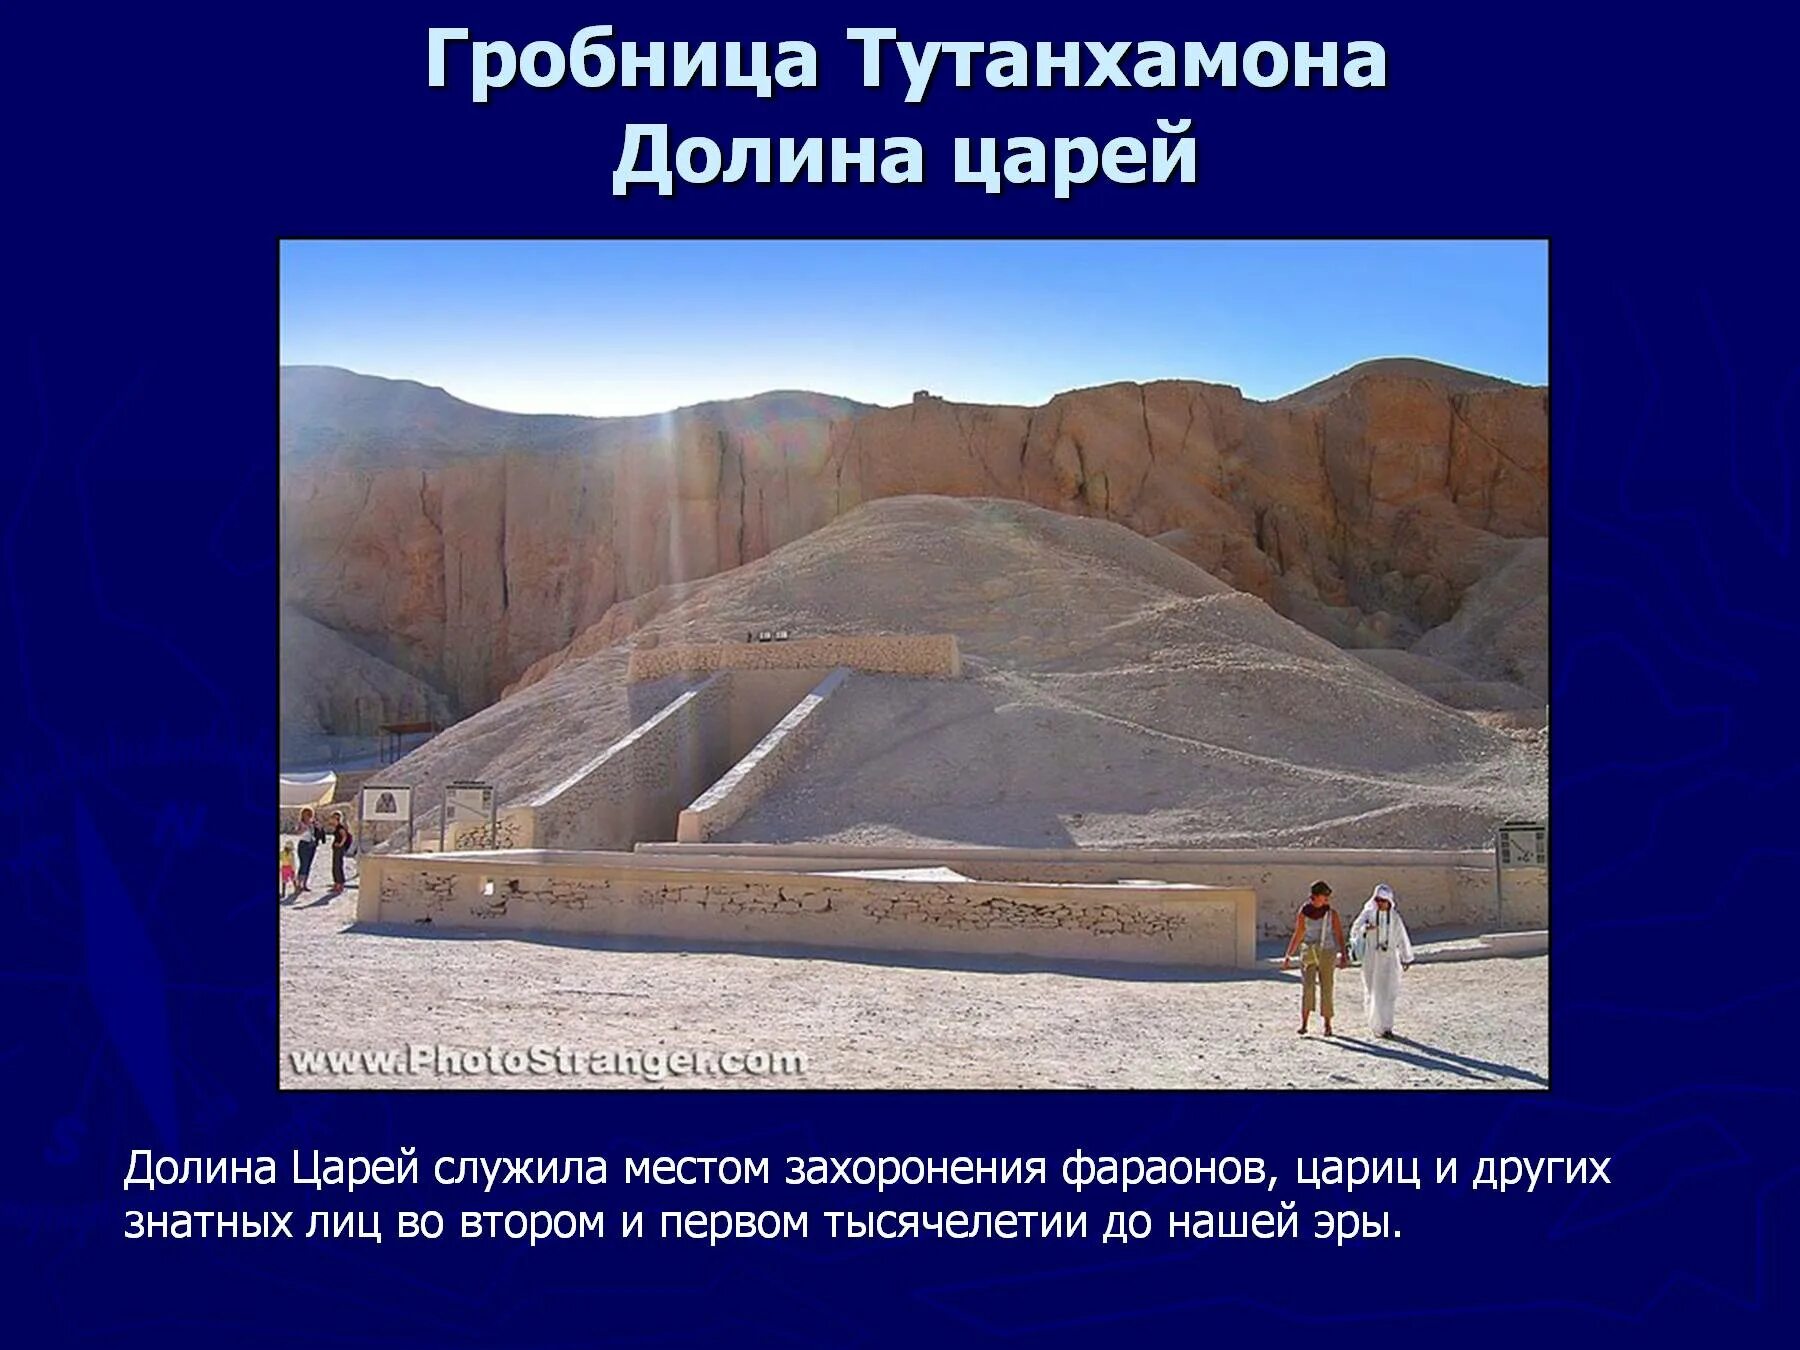 Страна где для погребения фараонов строили пирамиды. Гробница Тутанхамона в долине царей. Долина царей гробницы фараонов. Долина царей. Захоронение Тутанхамона. Долина царей Египет Гробница Тутанхамона.